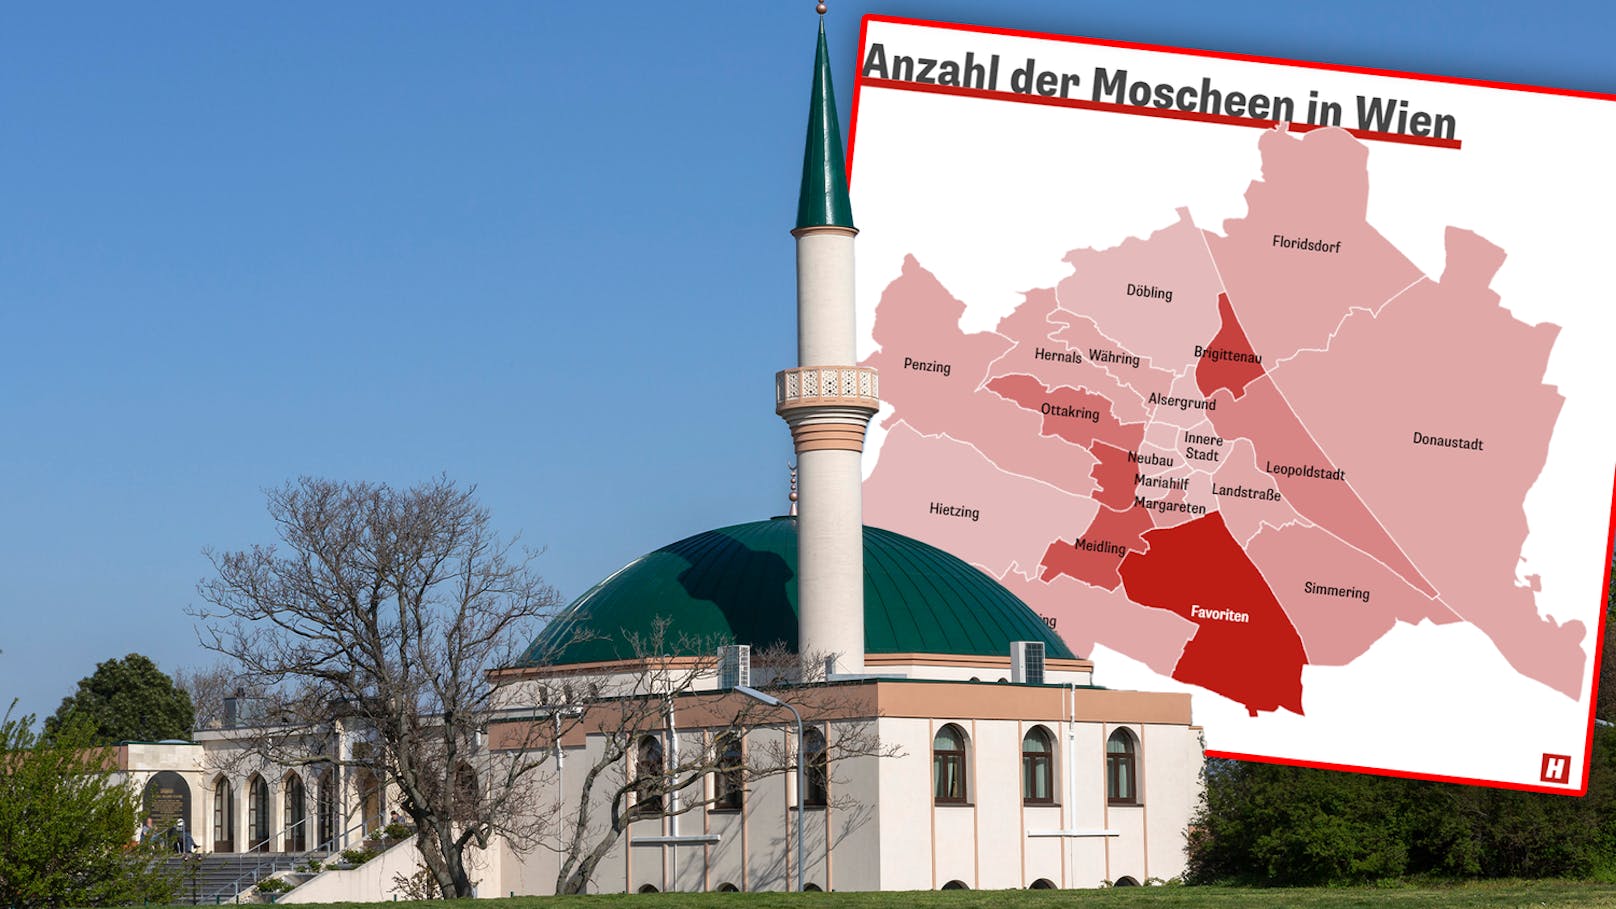 108 Moscheen in Wien – dieser Bezirk hat die meisten